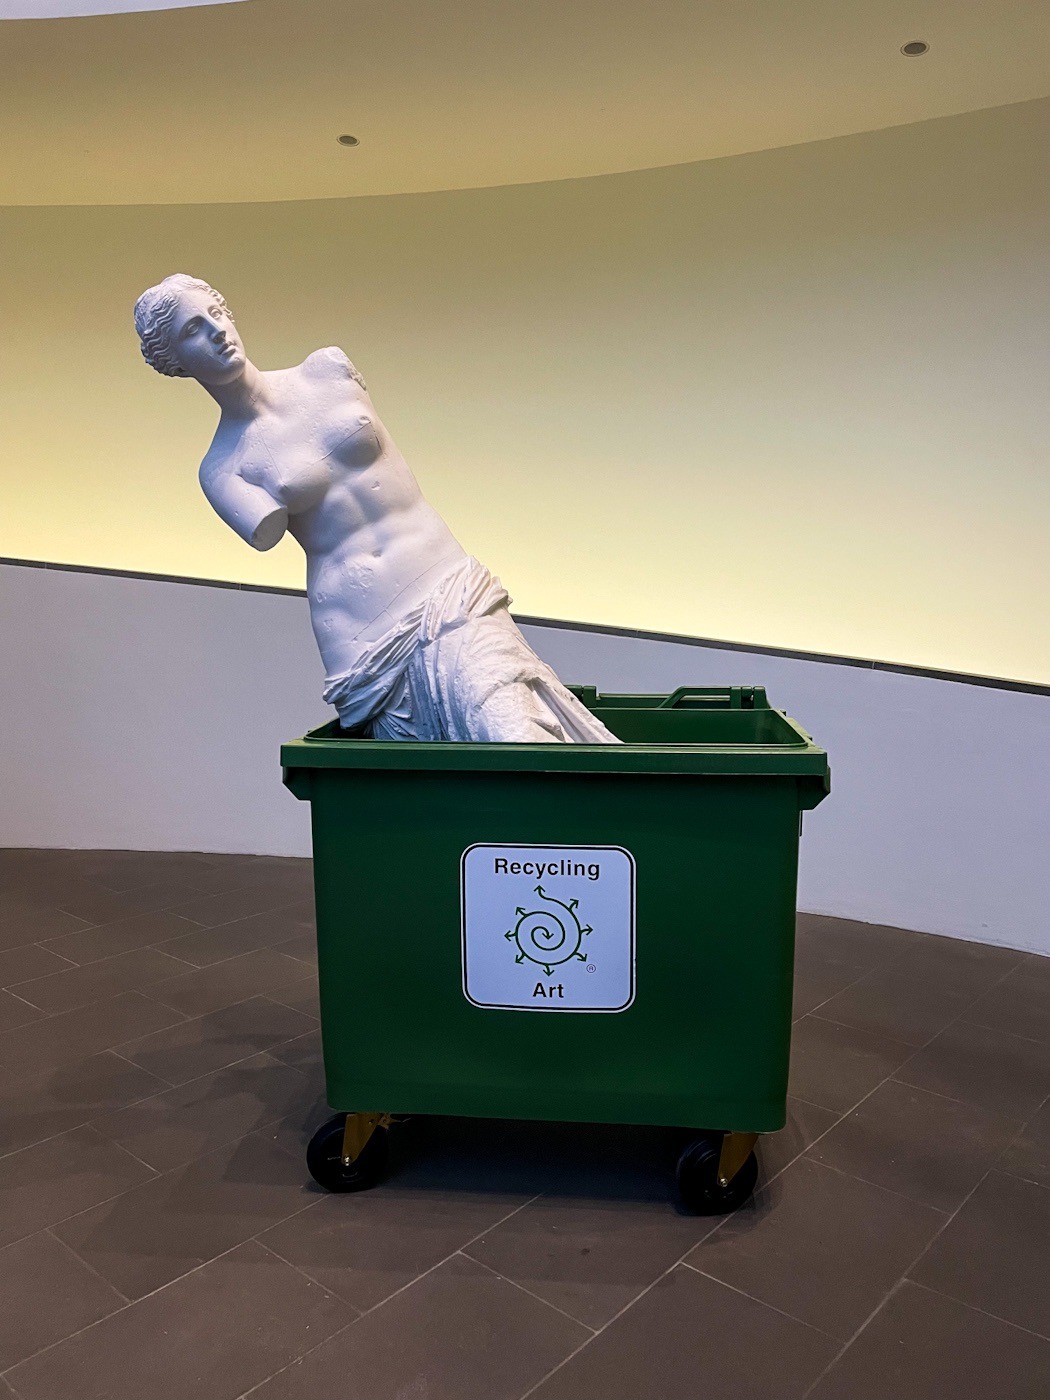 Eine antik aussehende Skulptur einer Frau in einer grünen Mülltonne.